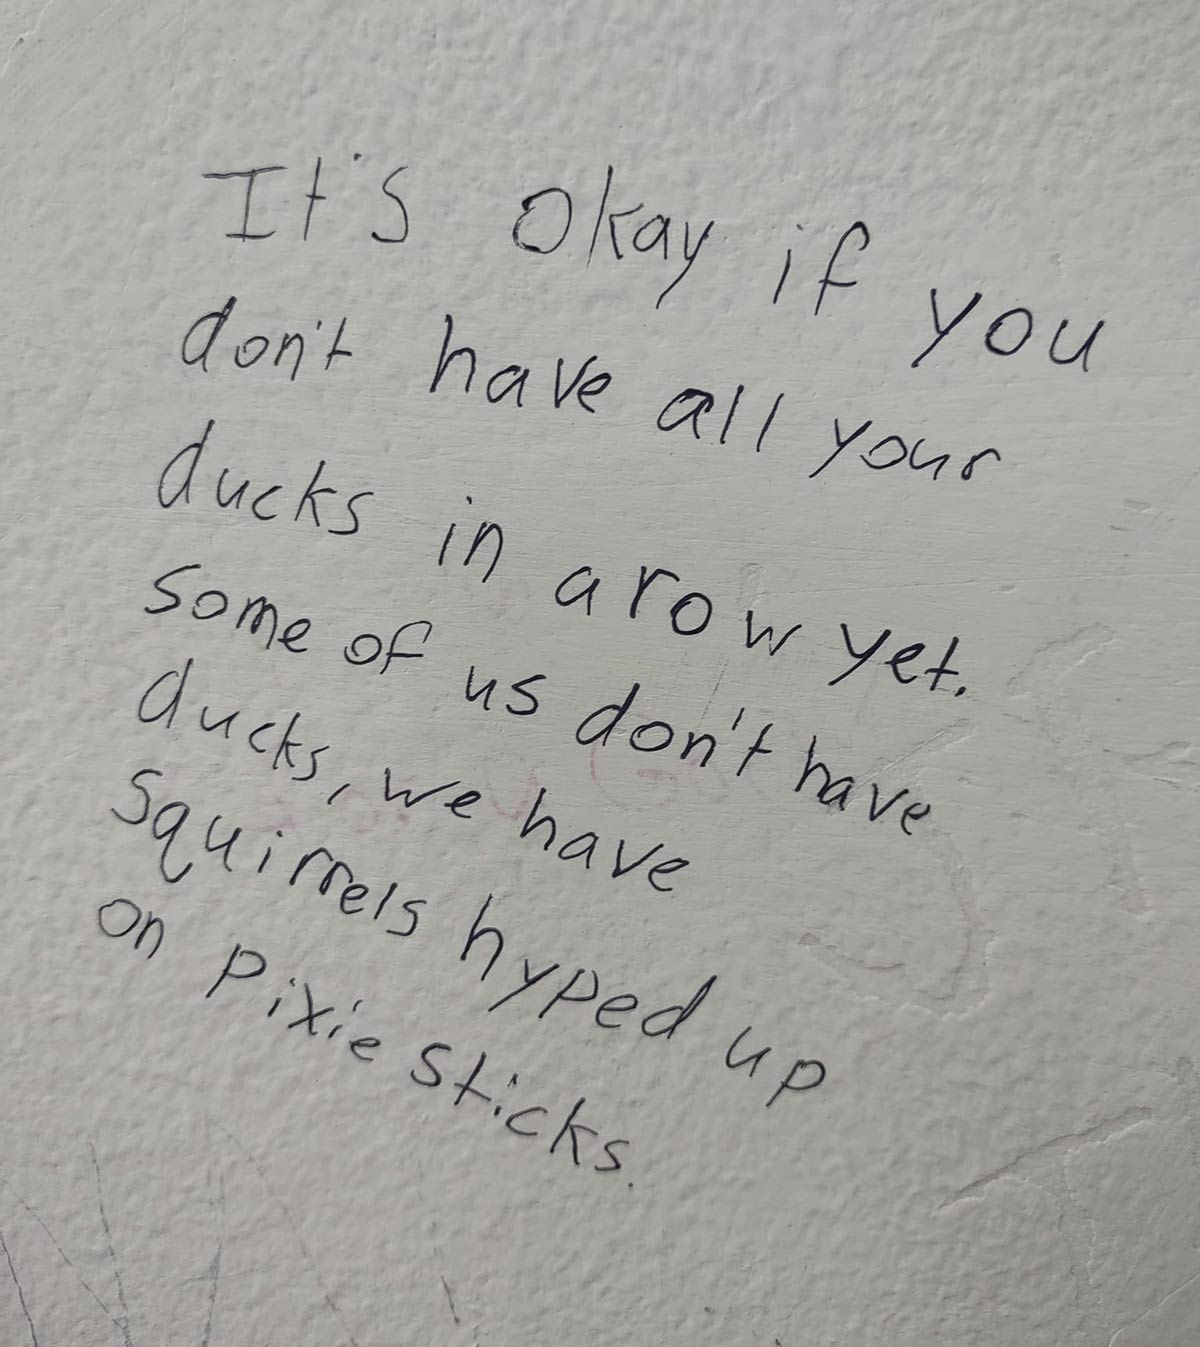 Seen on the bathroom wall